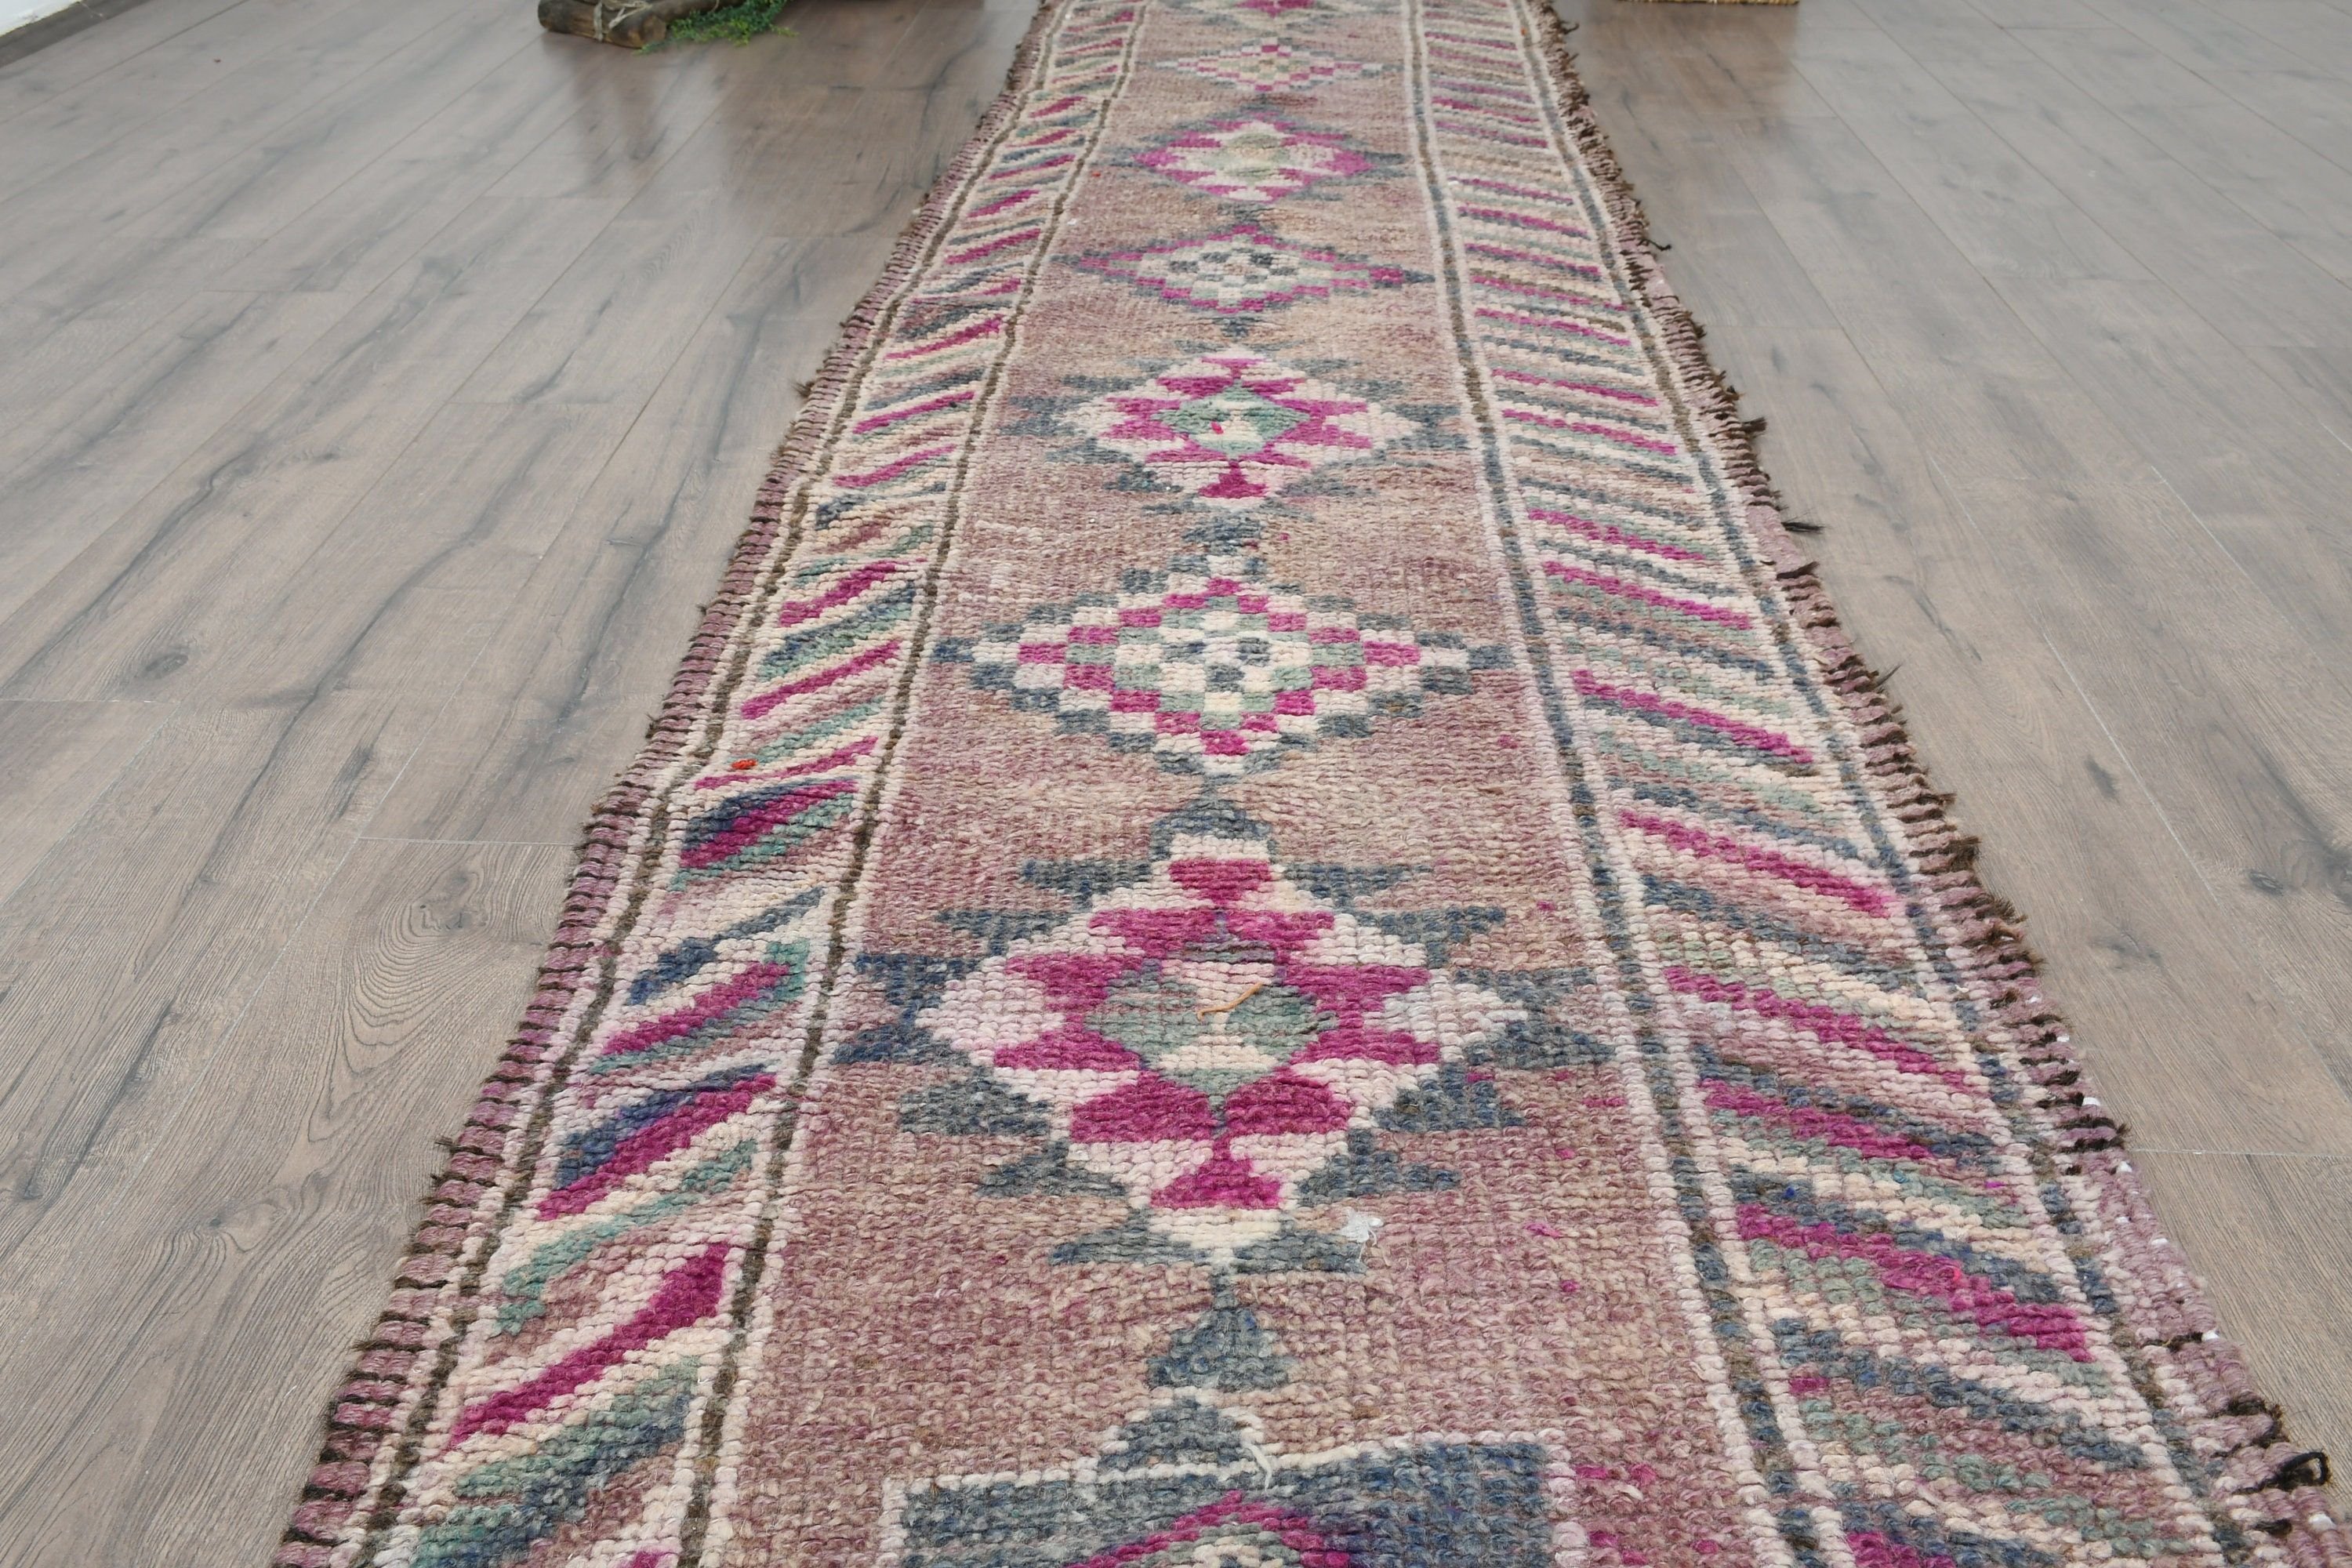 Eclectic Rug, Vintage Rug, Brown Anatolian Rugs, Floor Rugs, Stair Rug, Corridor Rugs, 2.8x13.2 ft Runner Rug, Turkish Rugs, Bedroom Rug